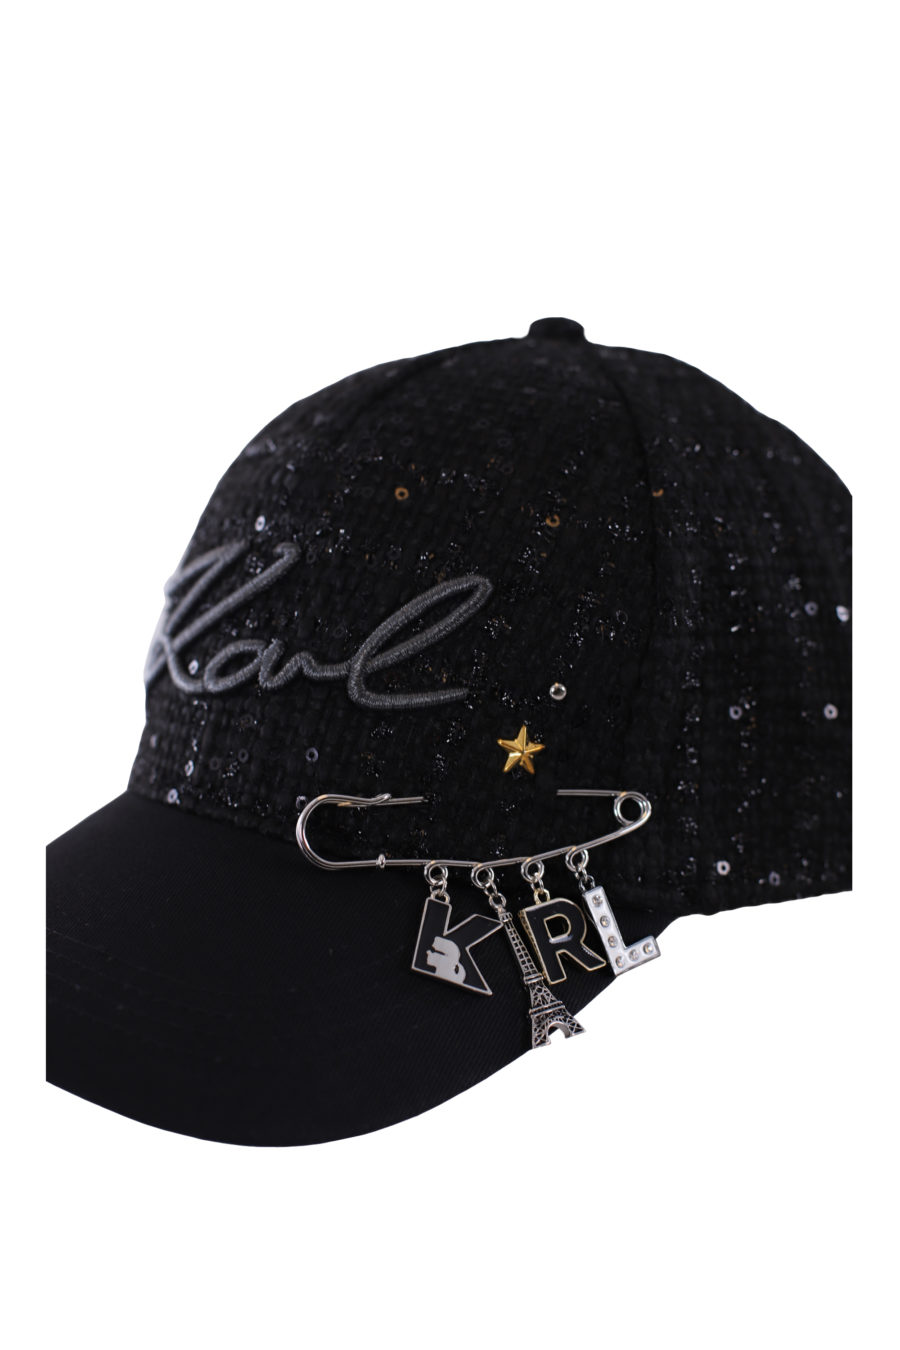 Gorra negra con pin de la marca - IMG 0209